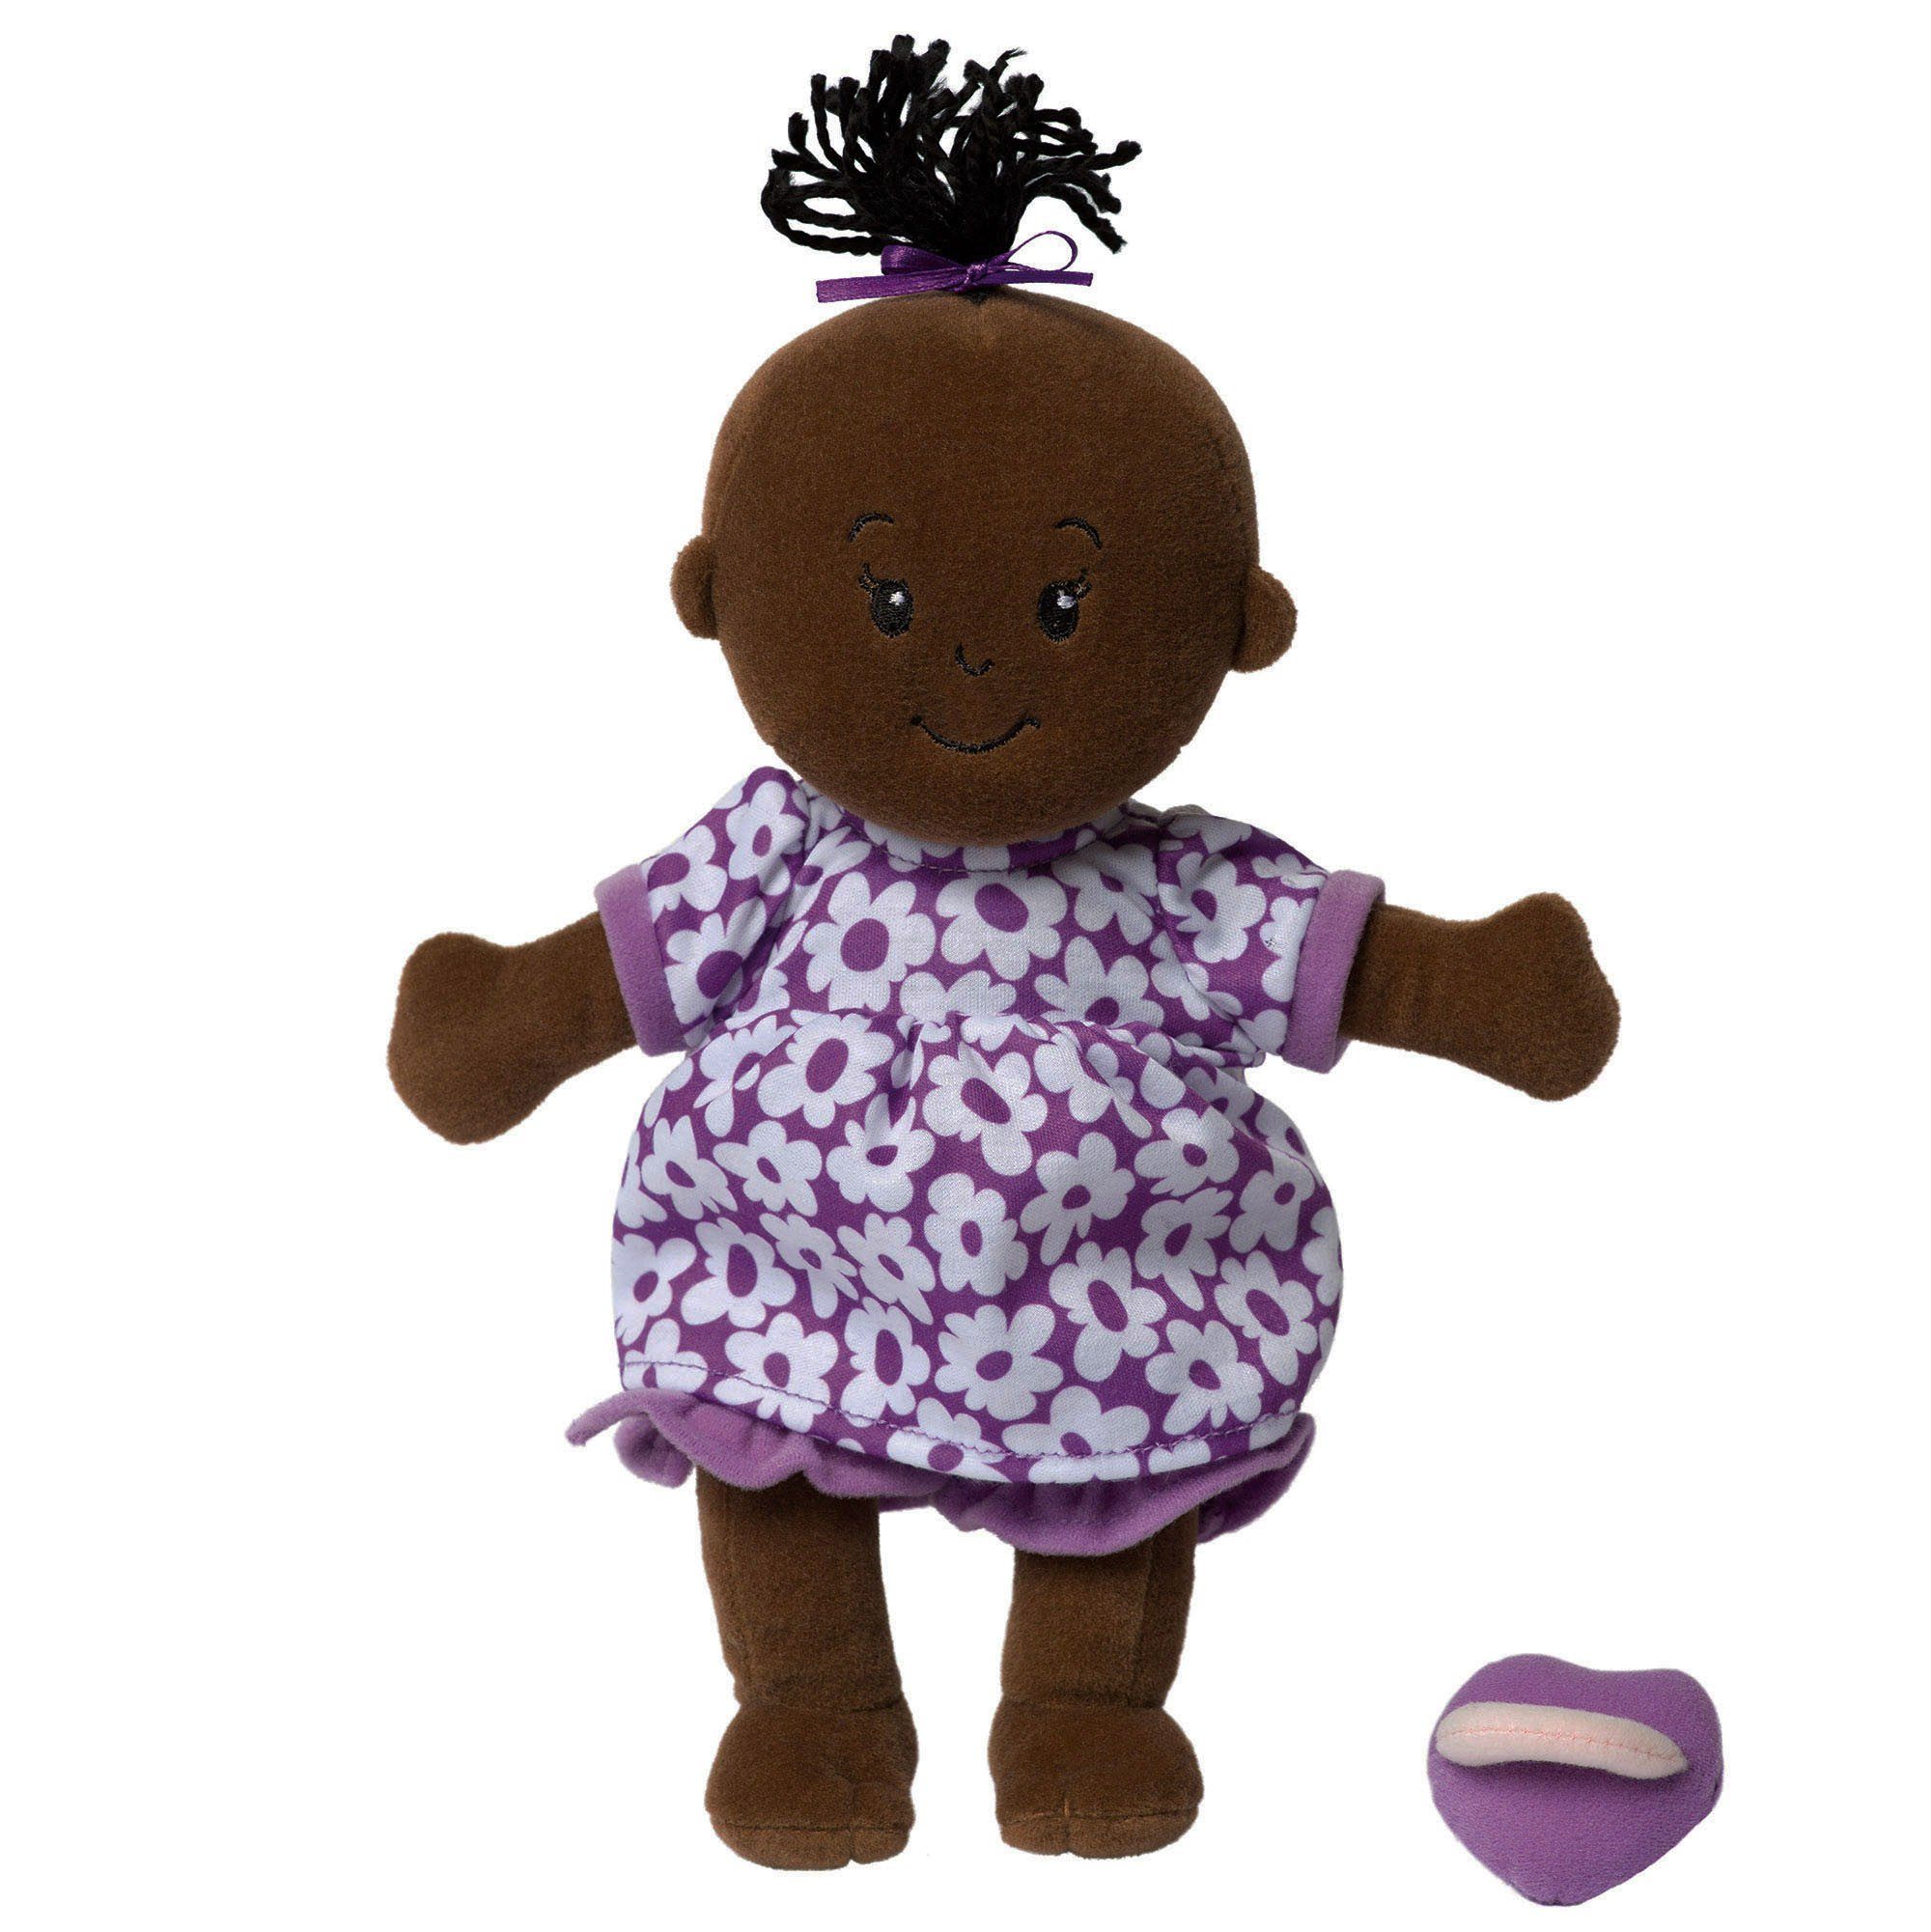 Manhattan Toy Wee Baby Stella Doll Brown with Black Hair Dolls